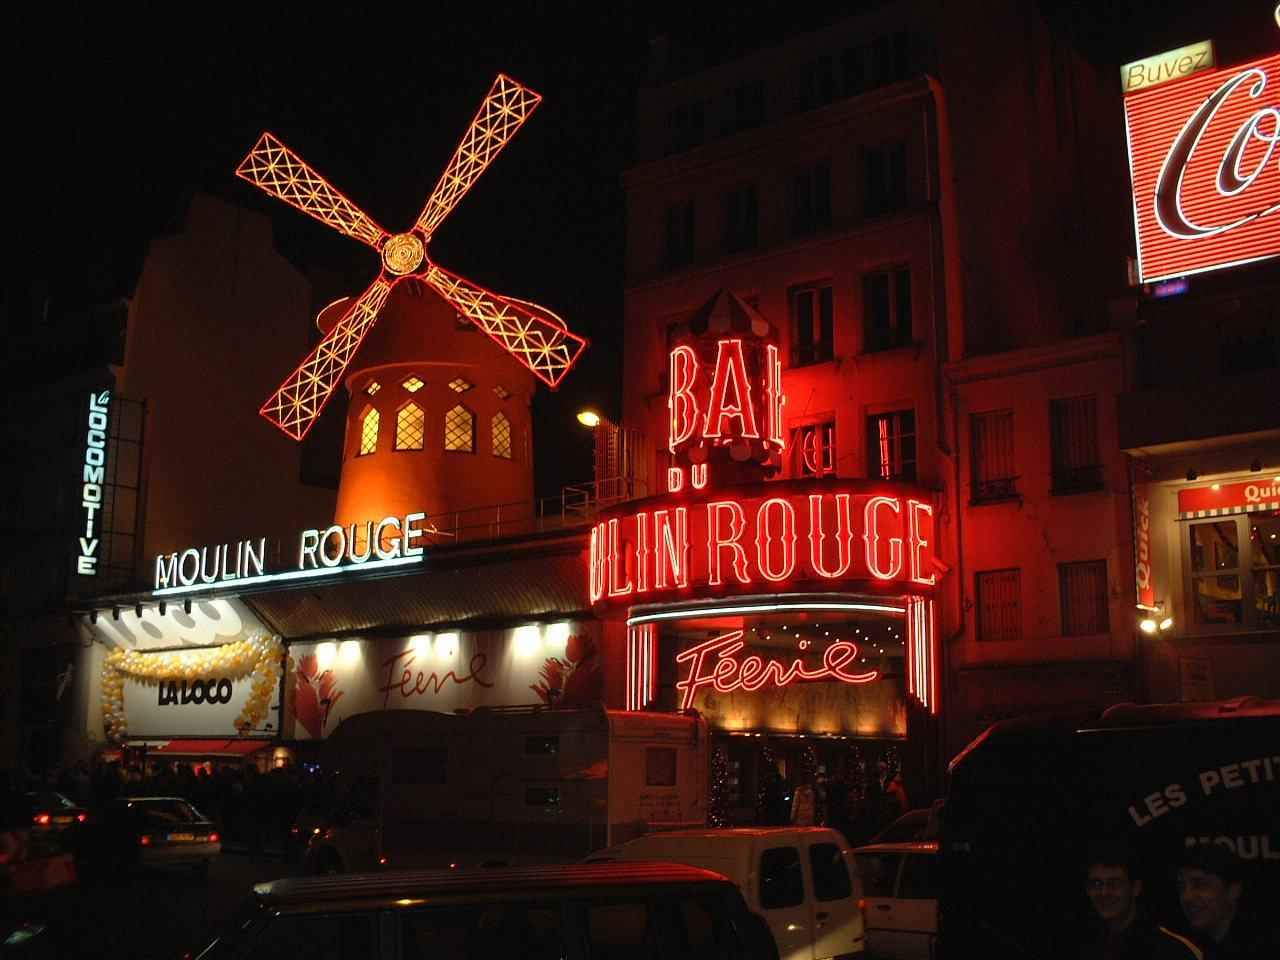 Moulin_rouge.jpg